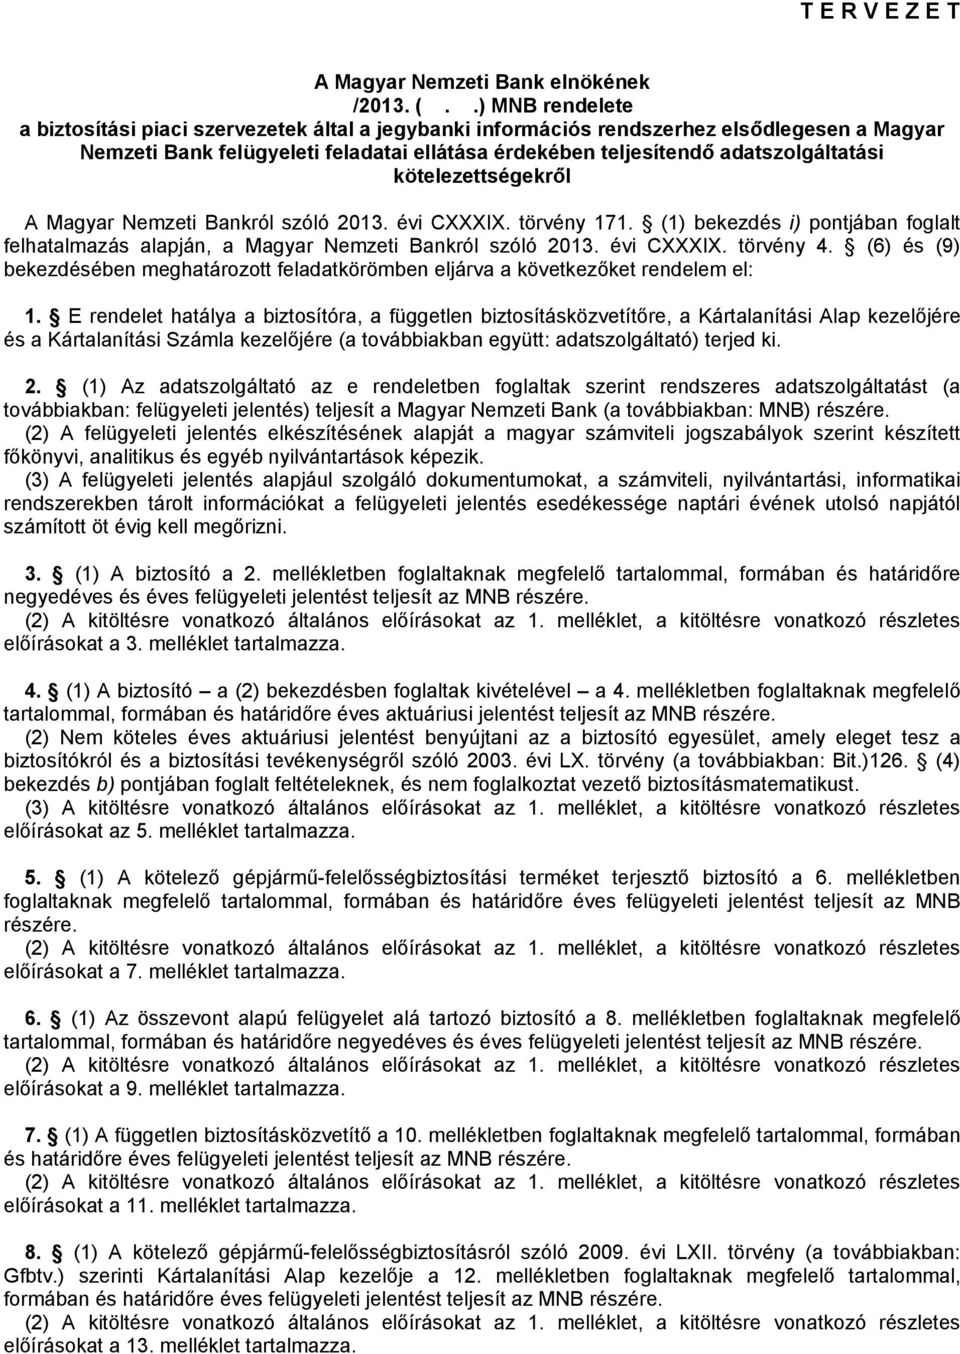 kötelezettségekről A Magyar Nemzeti Bankról szóló 2013. évi CXXXIX. törvény 171. (1) bekezdés i) pontjában foglalt felhatalmazás alapján, a Magyar Nemzeti Bankról szóló 2013. évi CXXXIX. törvény 4.